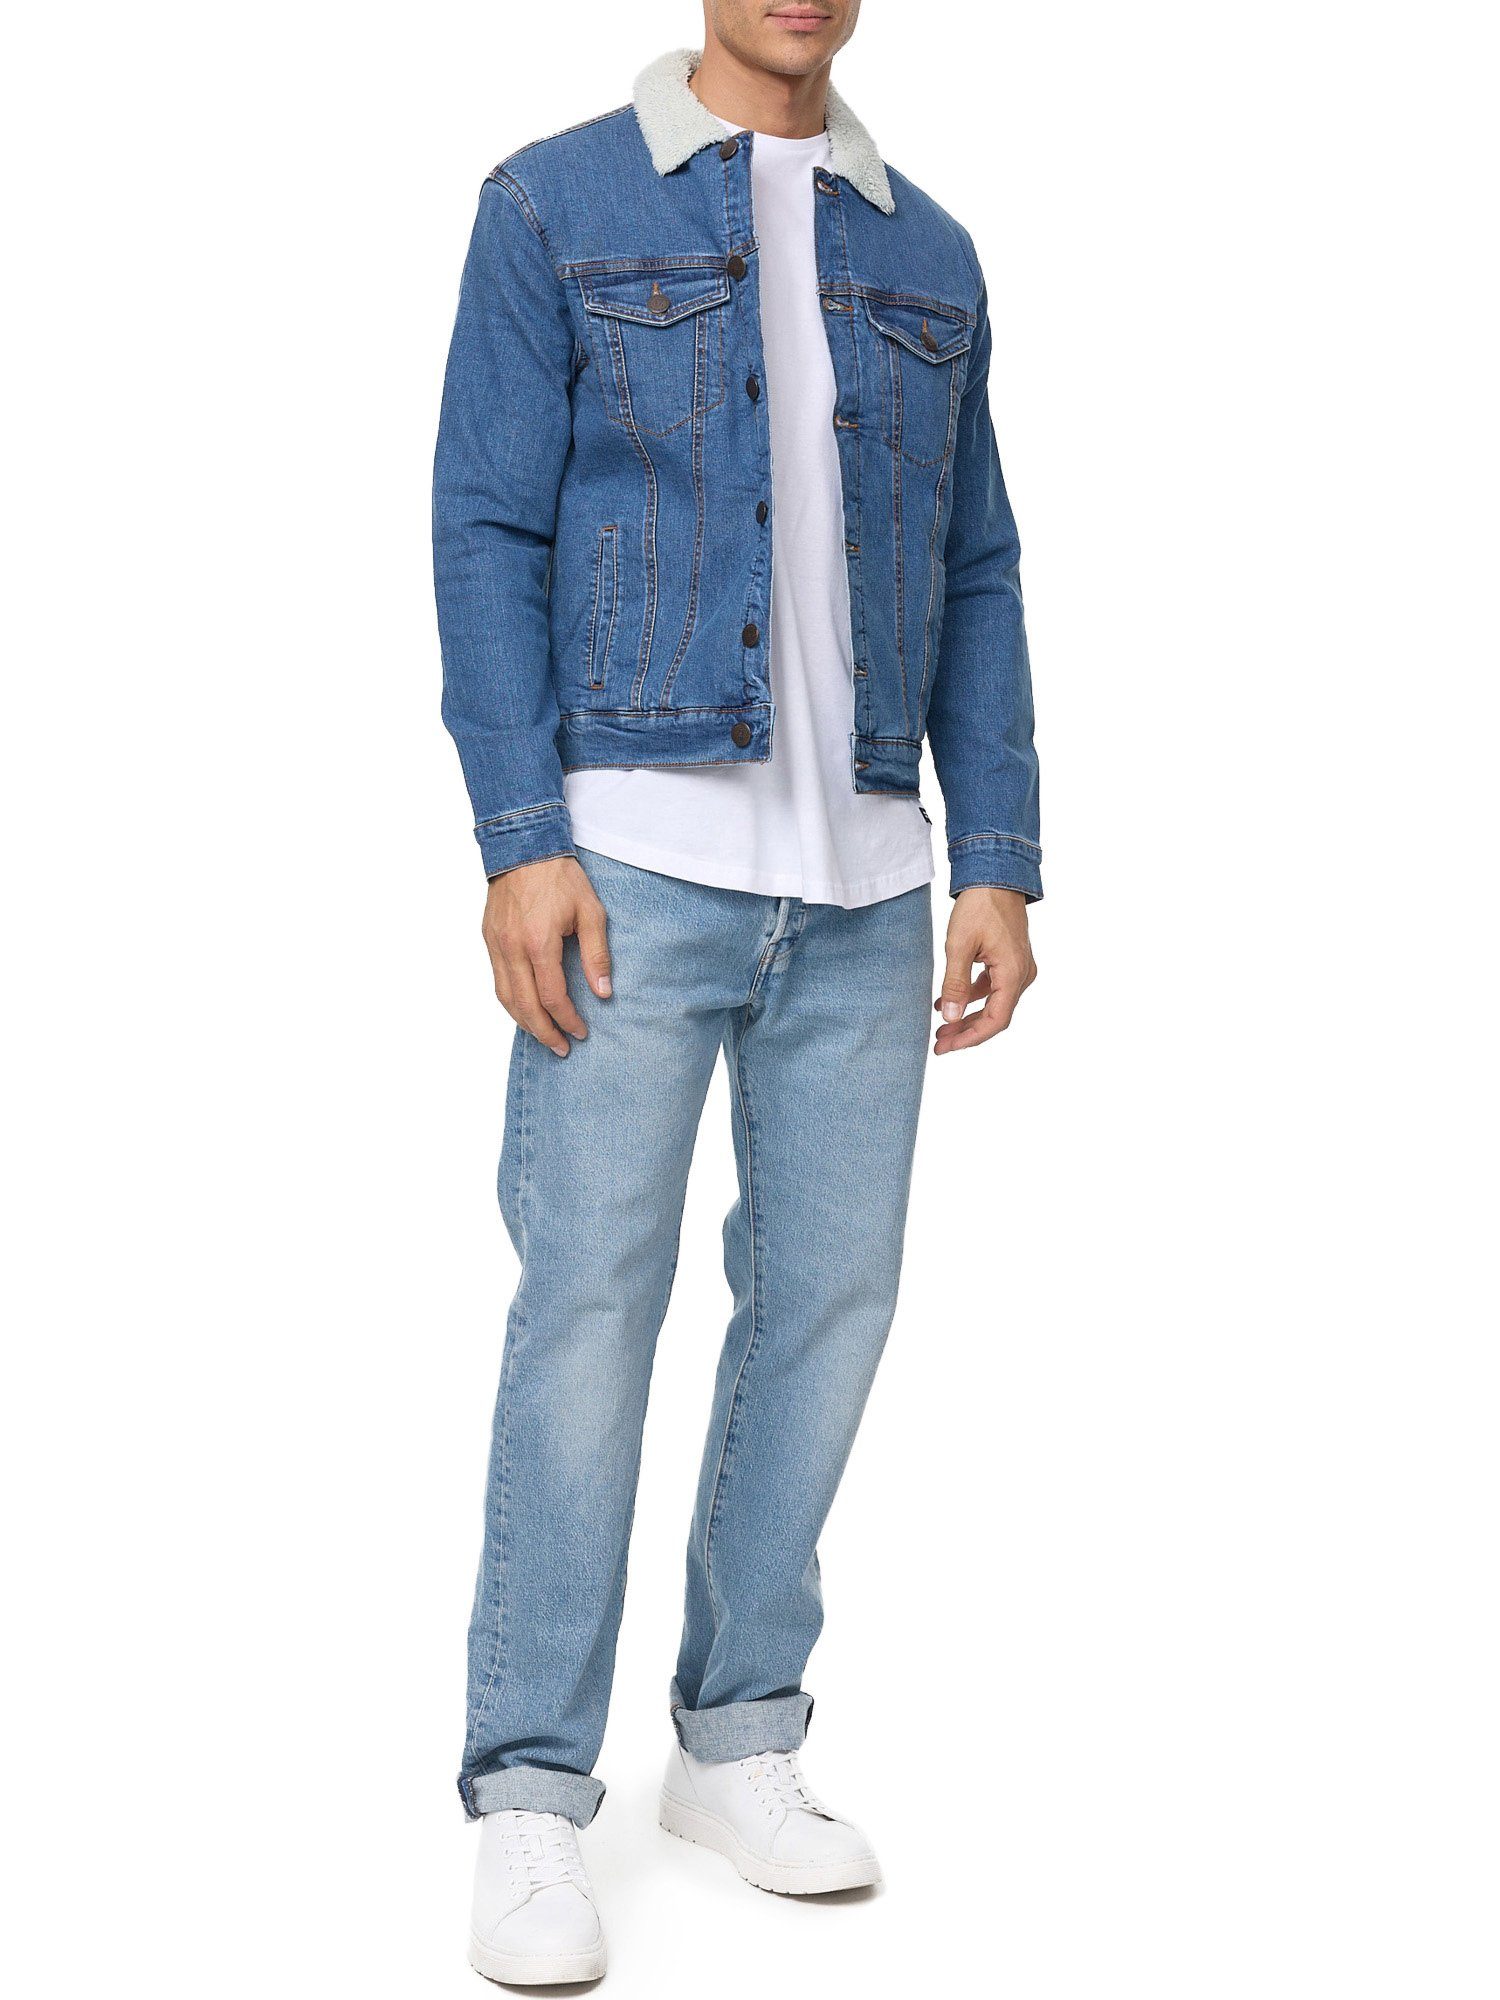 Tazzio Jeansjacke A400 Jeans mit Fellkragen Jacke blau